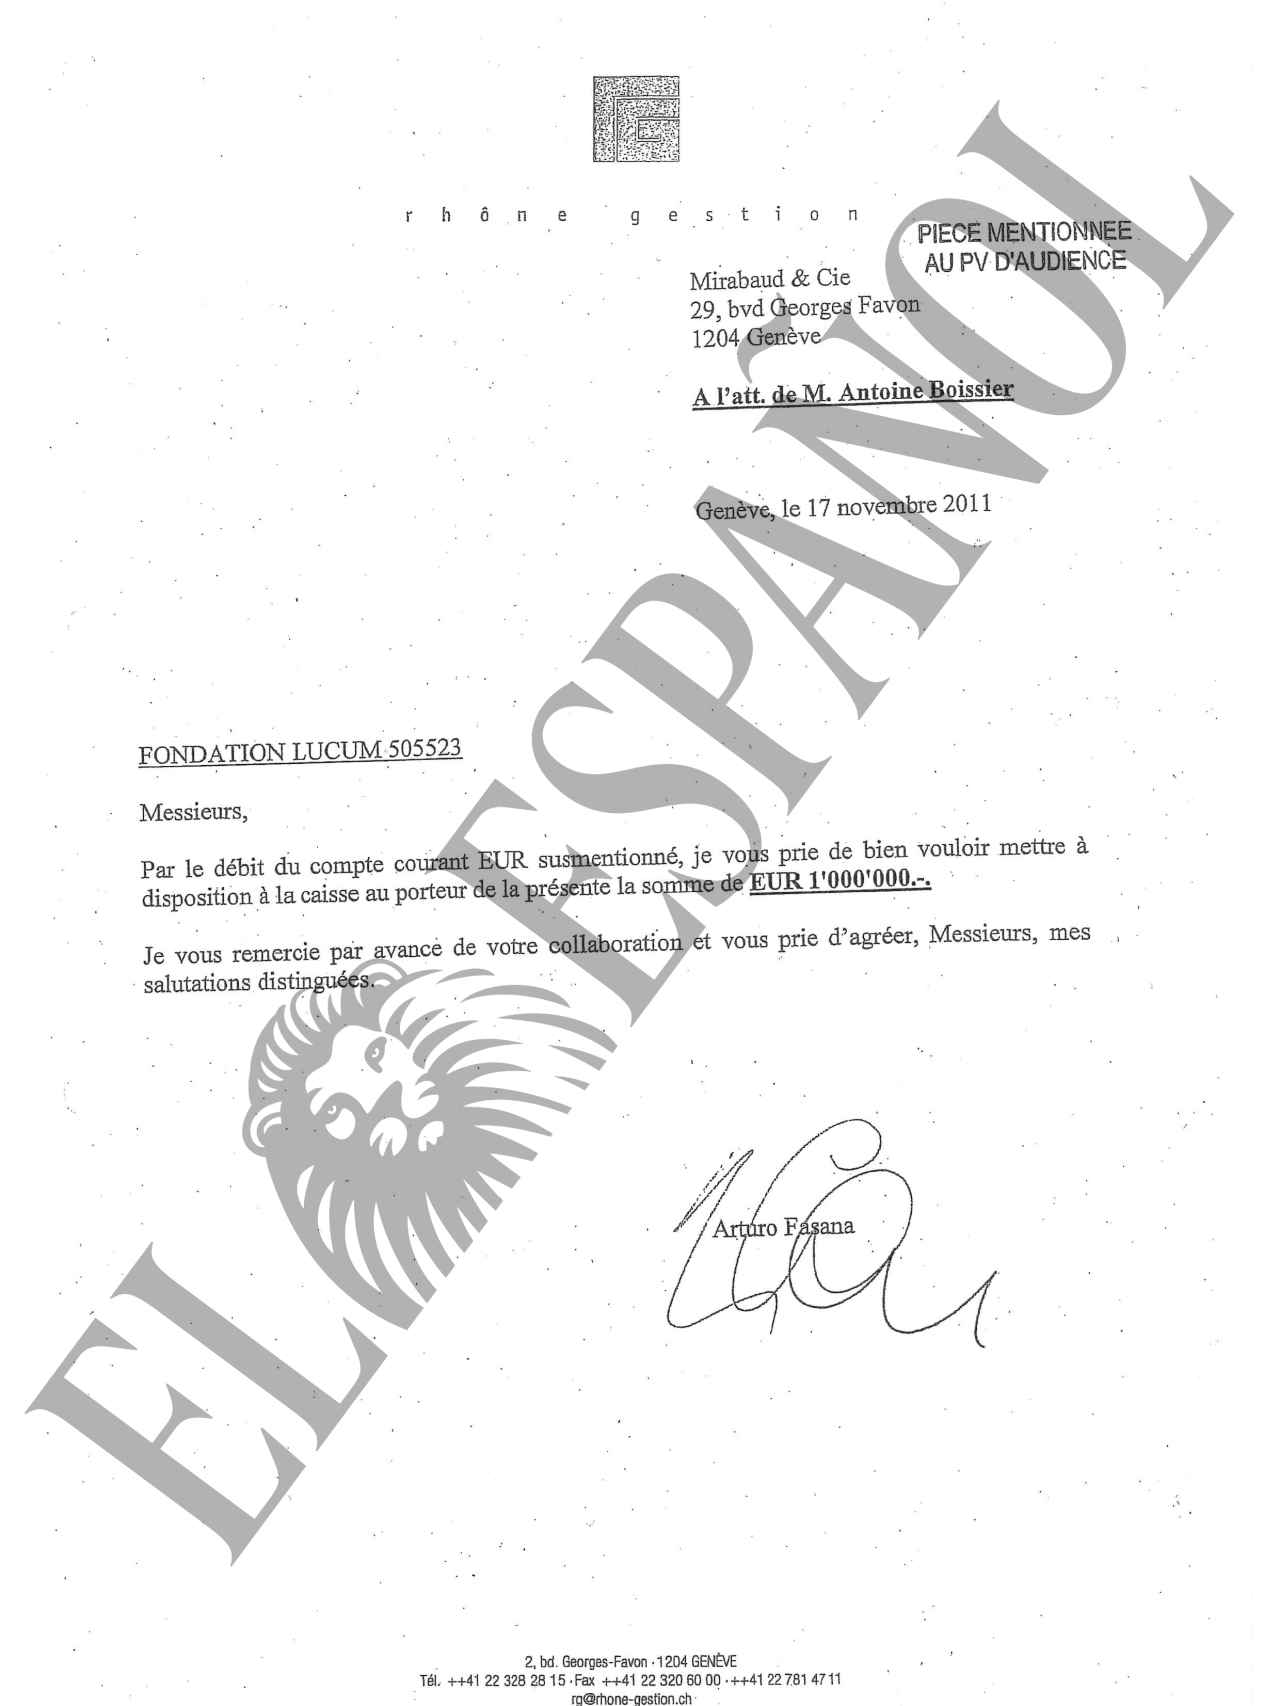 Documento firmado por Arturo Fasana para el banco Mirabaud solicitando la retirada de un millón de euros.